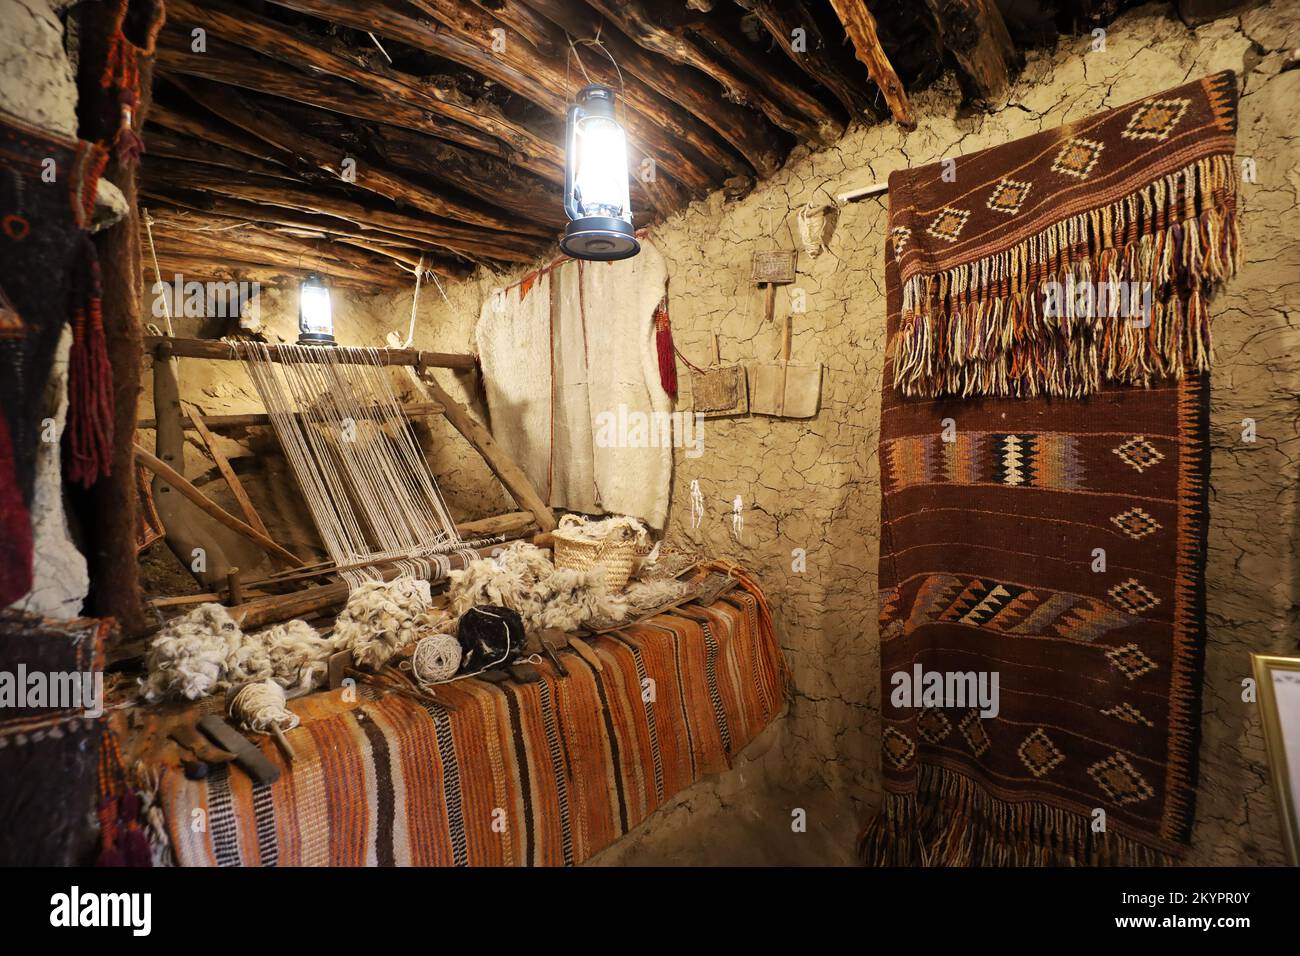 Antiguas artesanías tradicionales en el interior de la antigua casa árabe de barro - Museo del patrimonio de Al Malad - Al Baha , Arabia Saudita Foto de stock